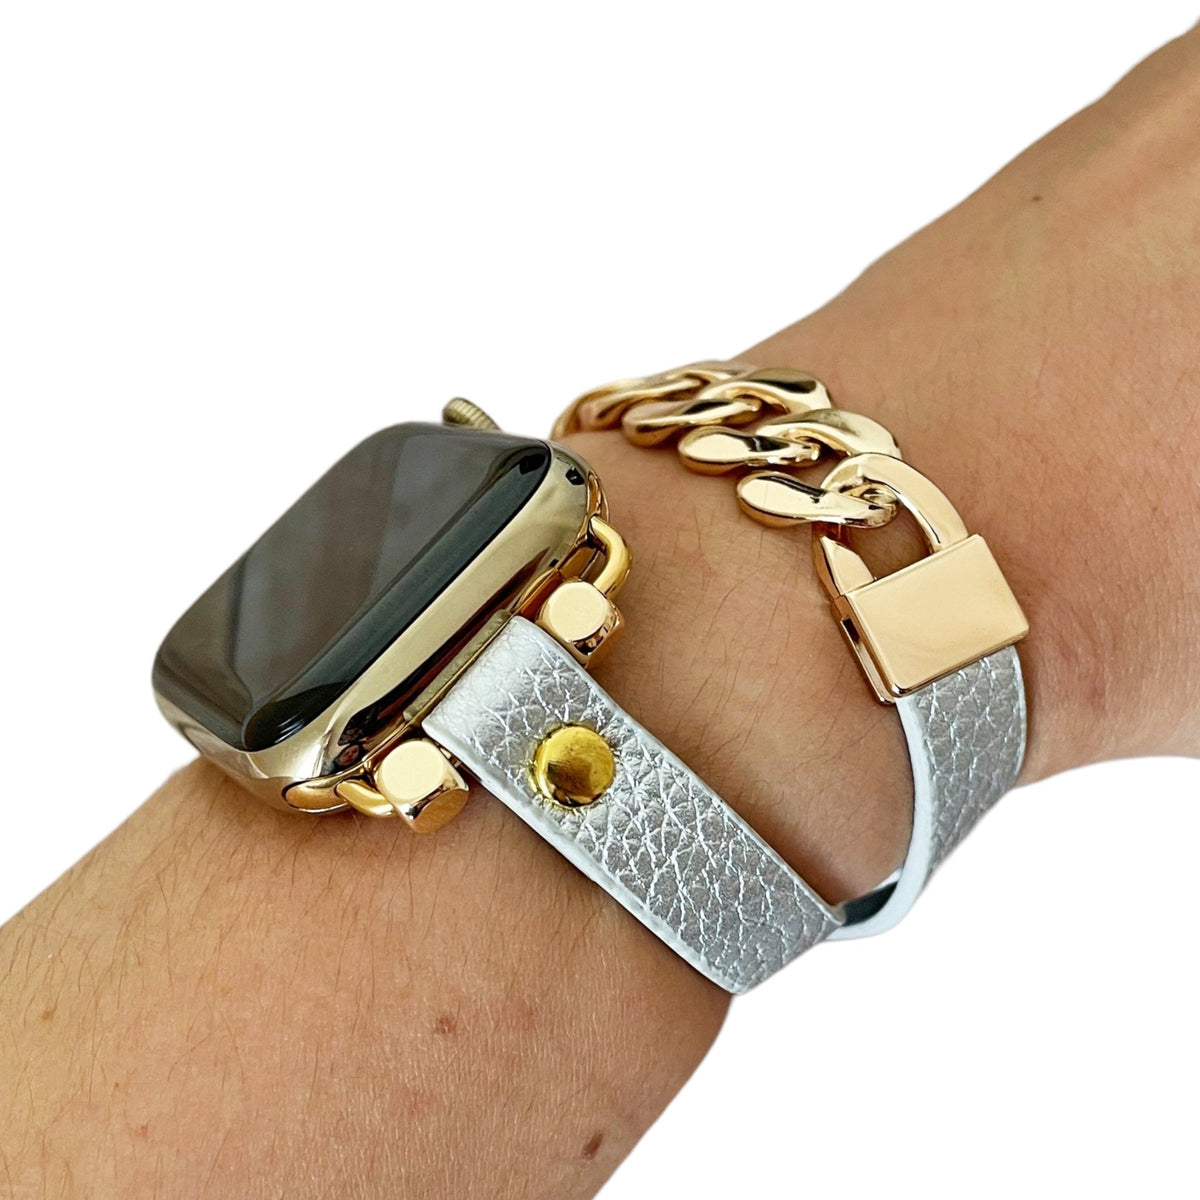 Posh Checker Leather Wrap Bracelet Gold Chain Band